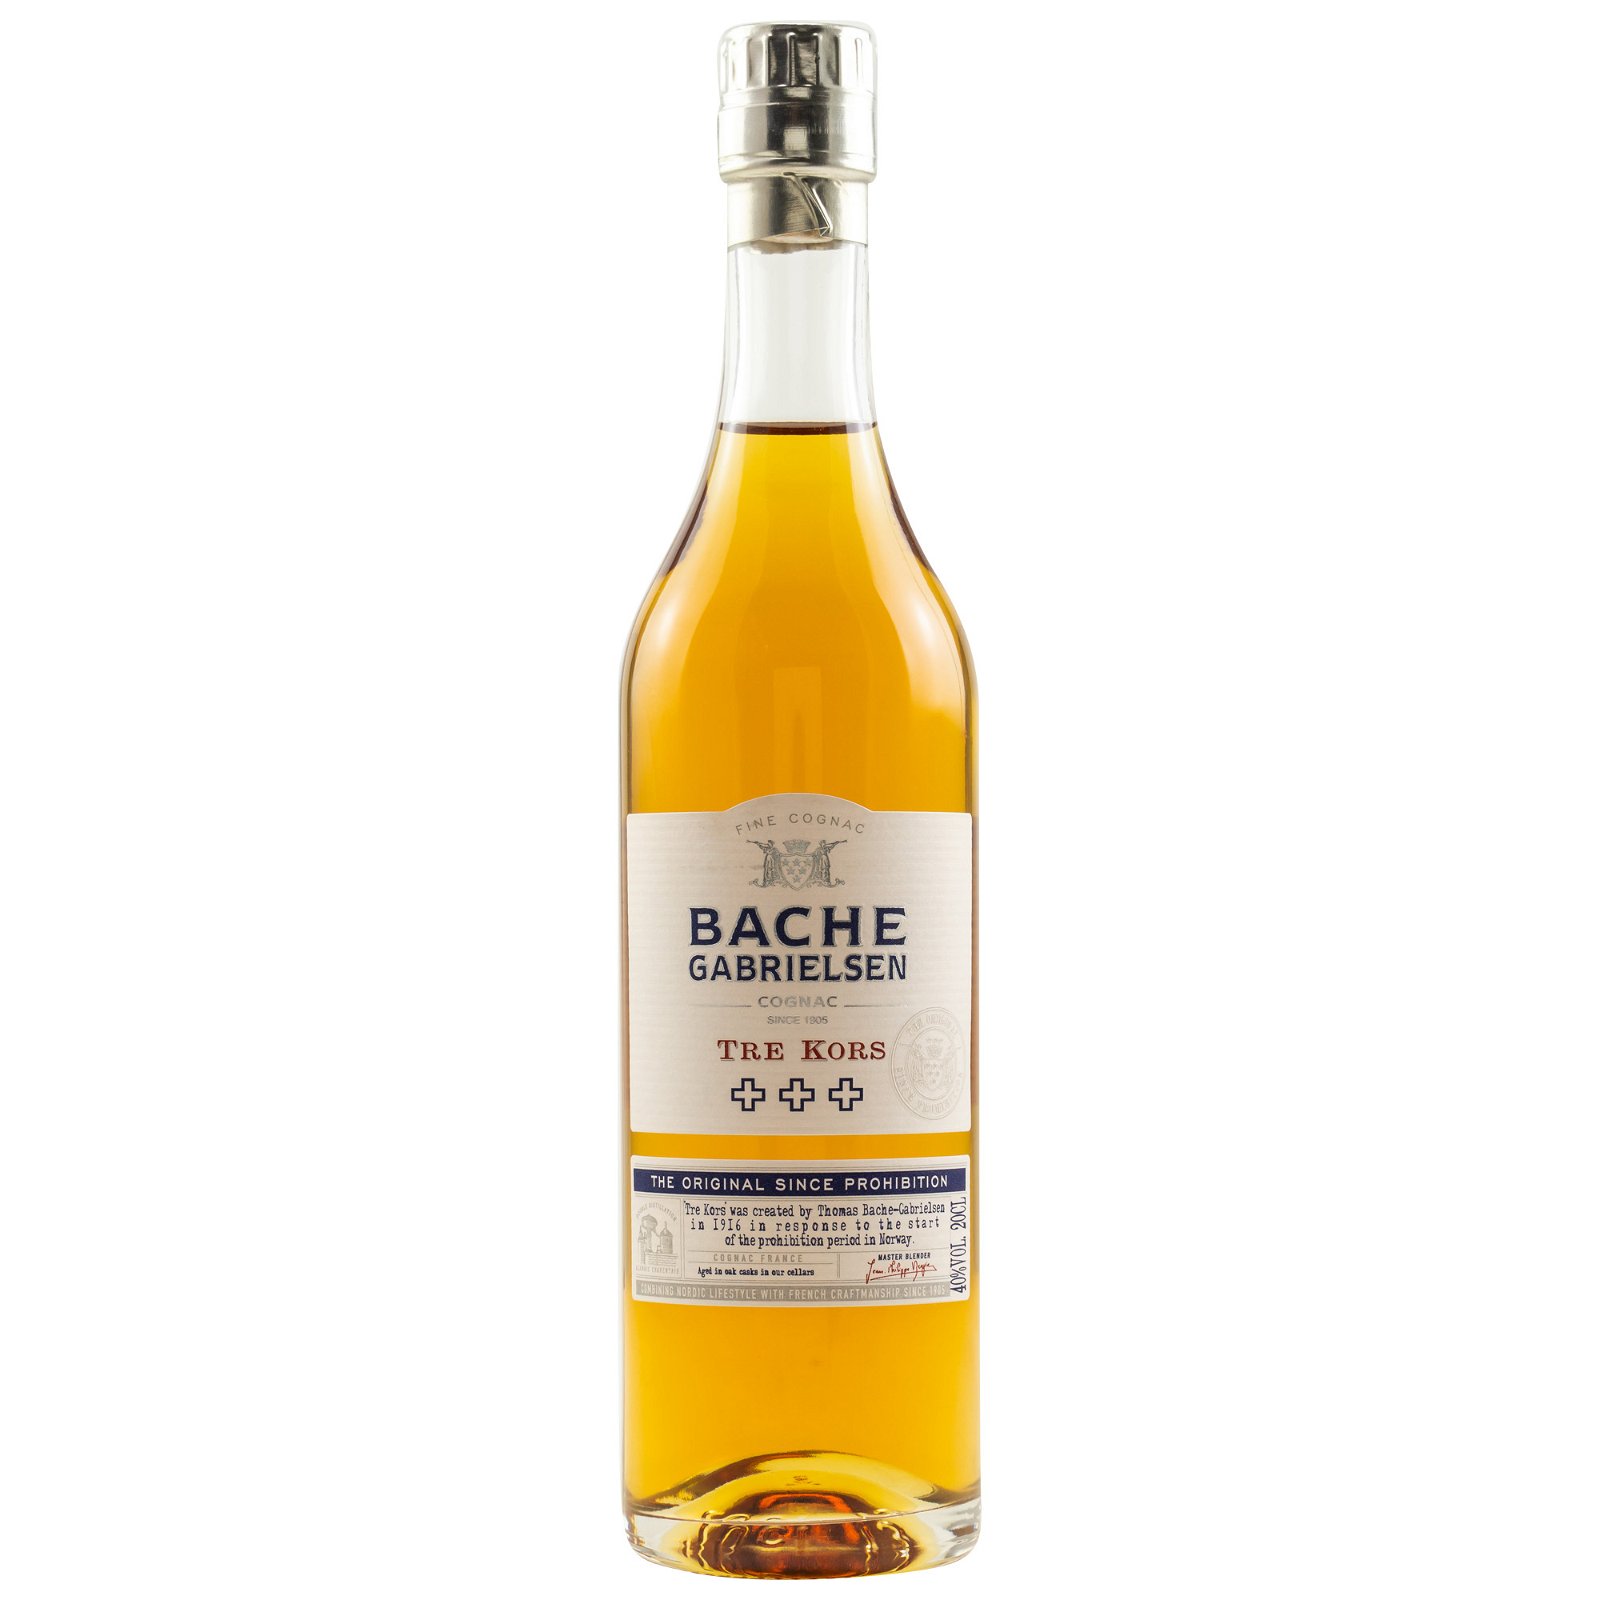 Bache-Gabrielsen Fine Cognac VS Tre Kors (200ml)